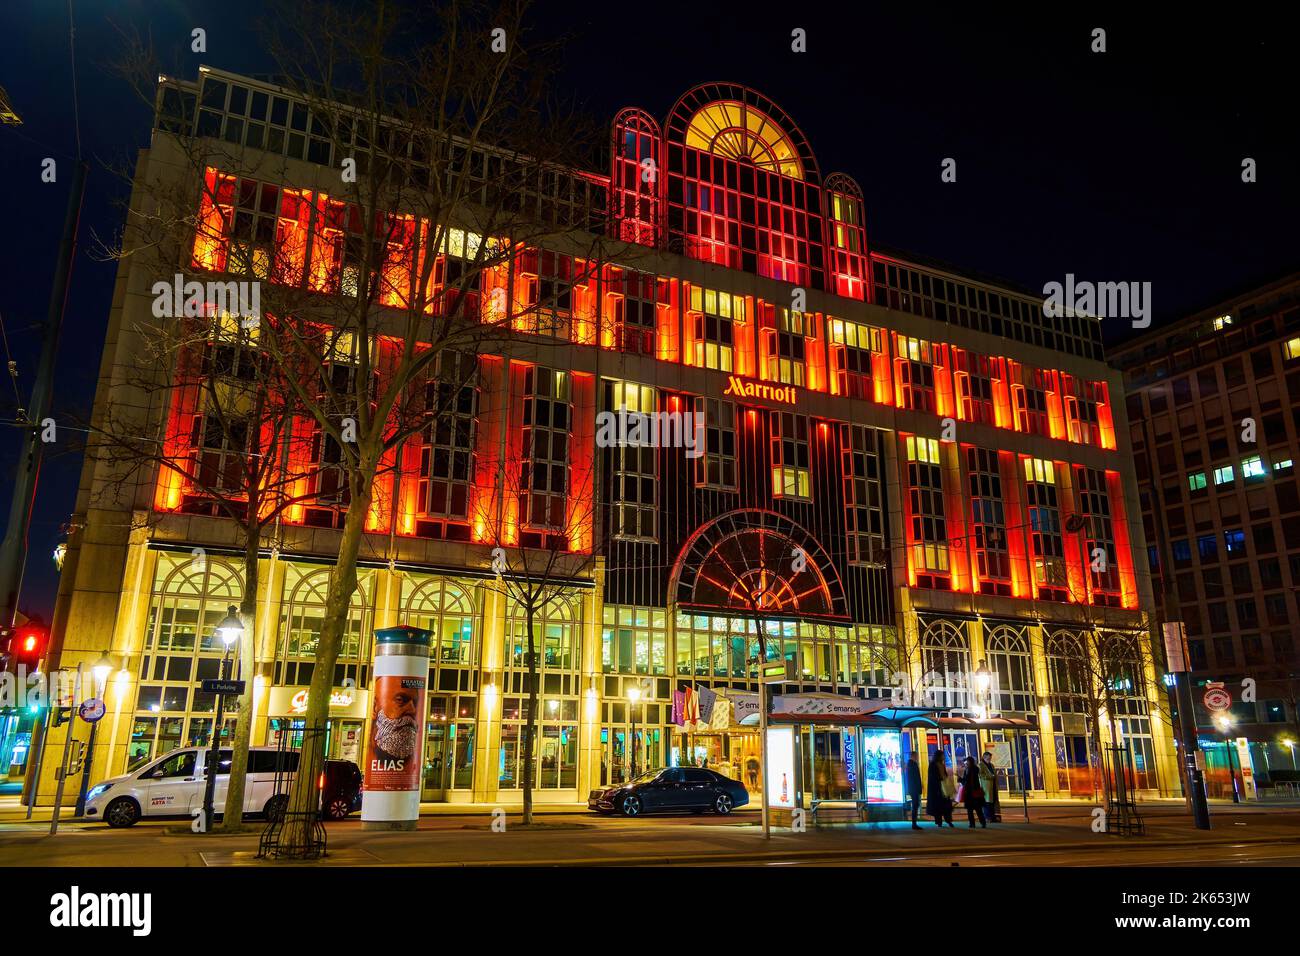 VIENA, AUSTRIA - 17 DE FEBRERO de 2019: Hermosa fachada iluminada por la noche del hotel Marriott en la avenida Parkring, el 17 de febrero en Viena, Austria Foto de stock